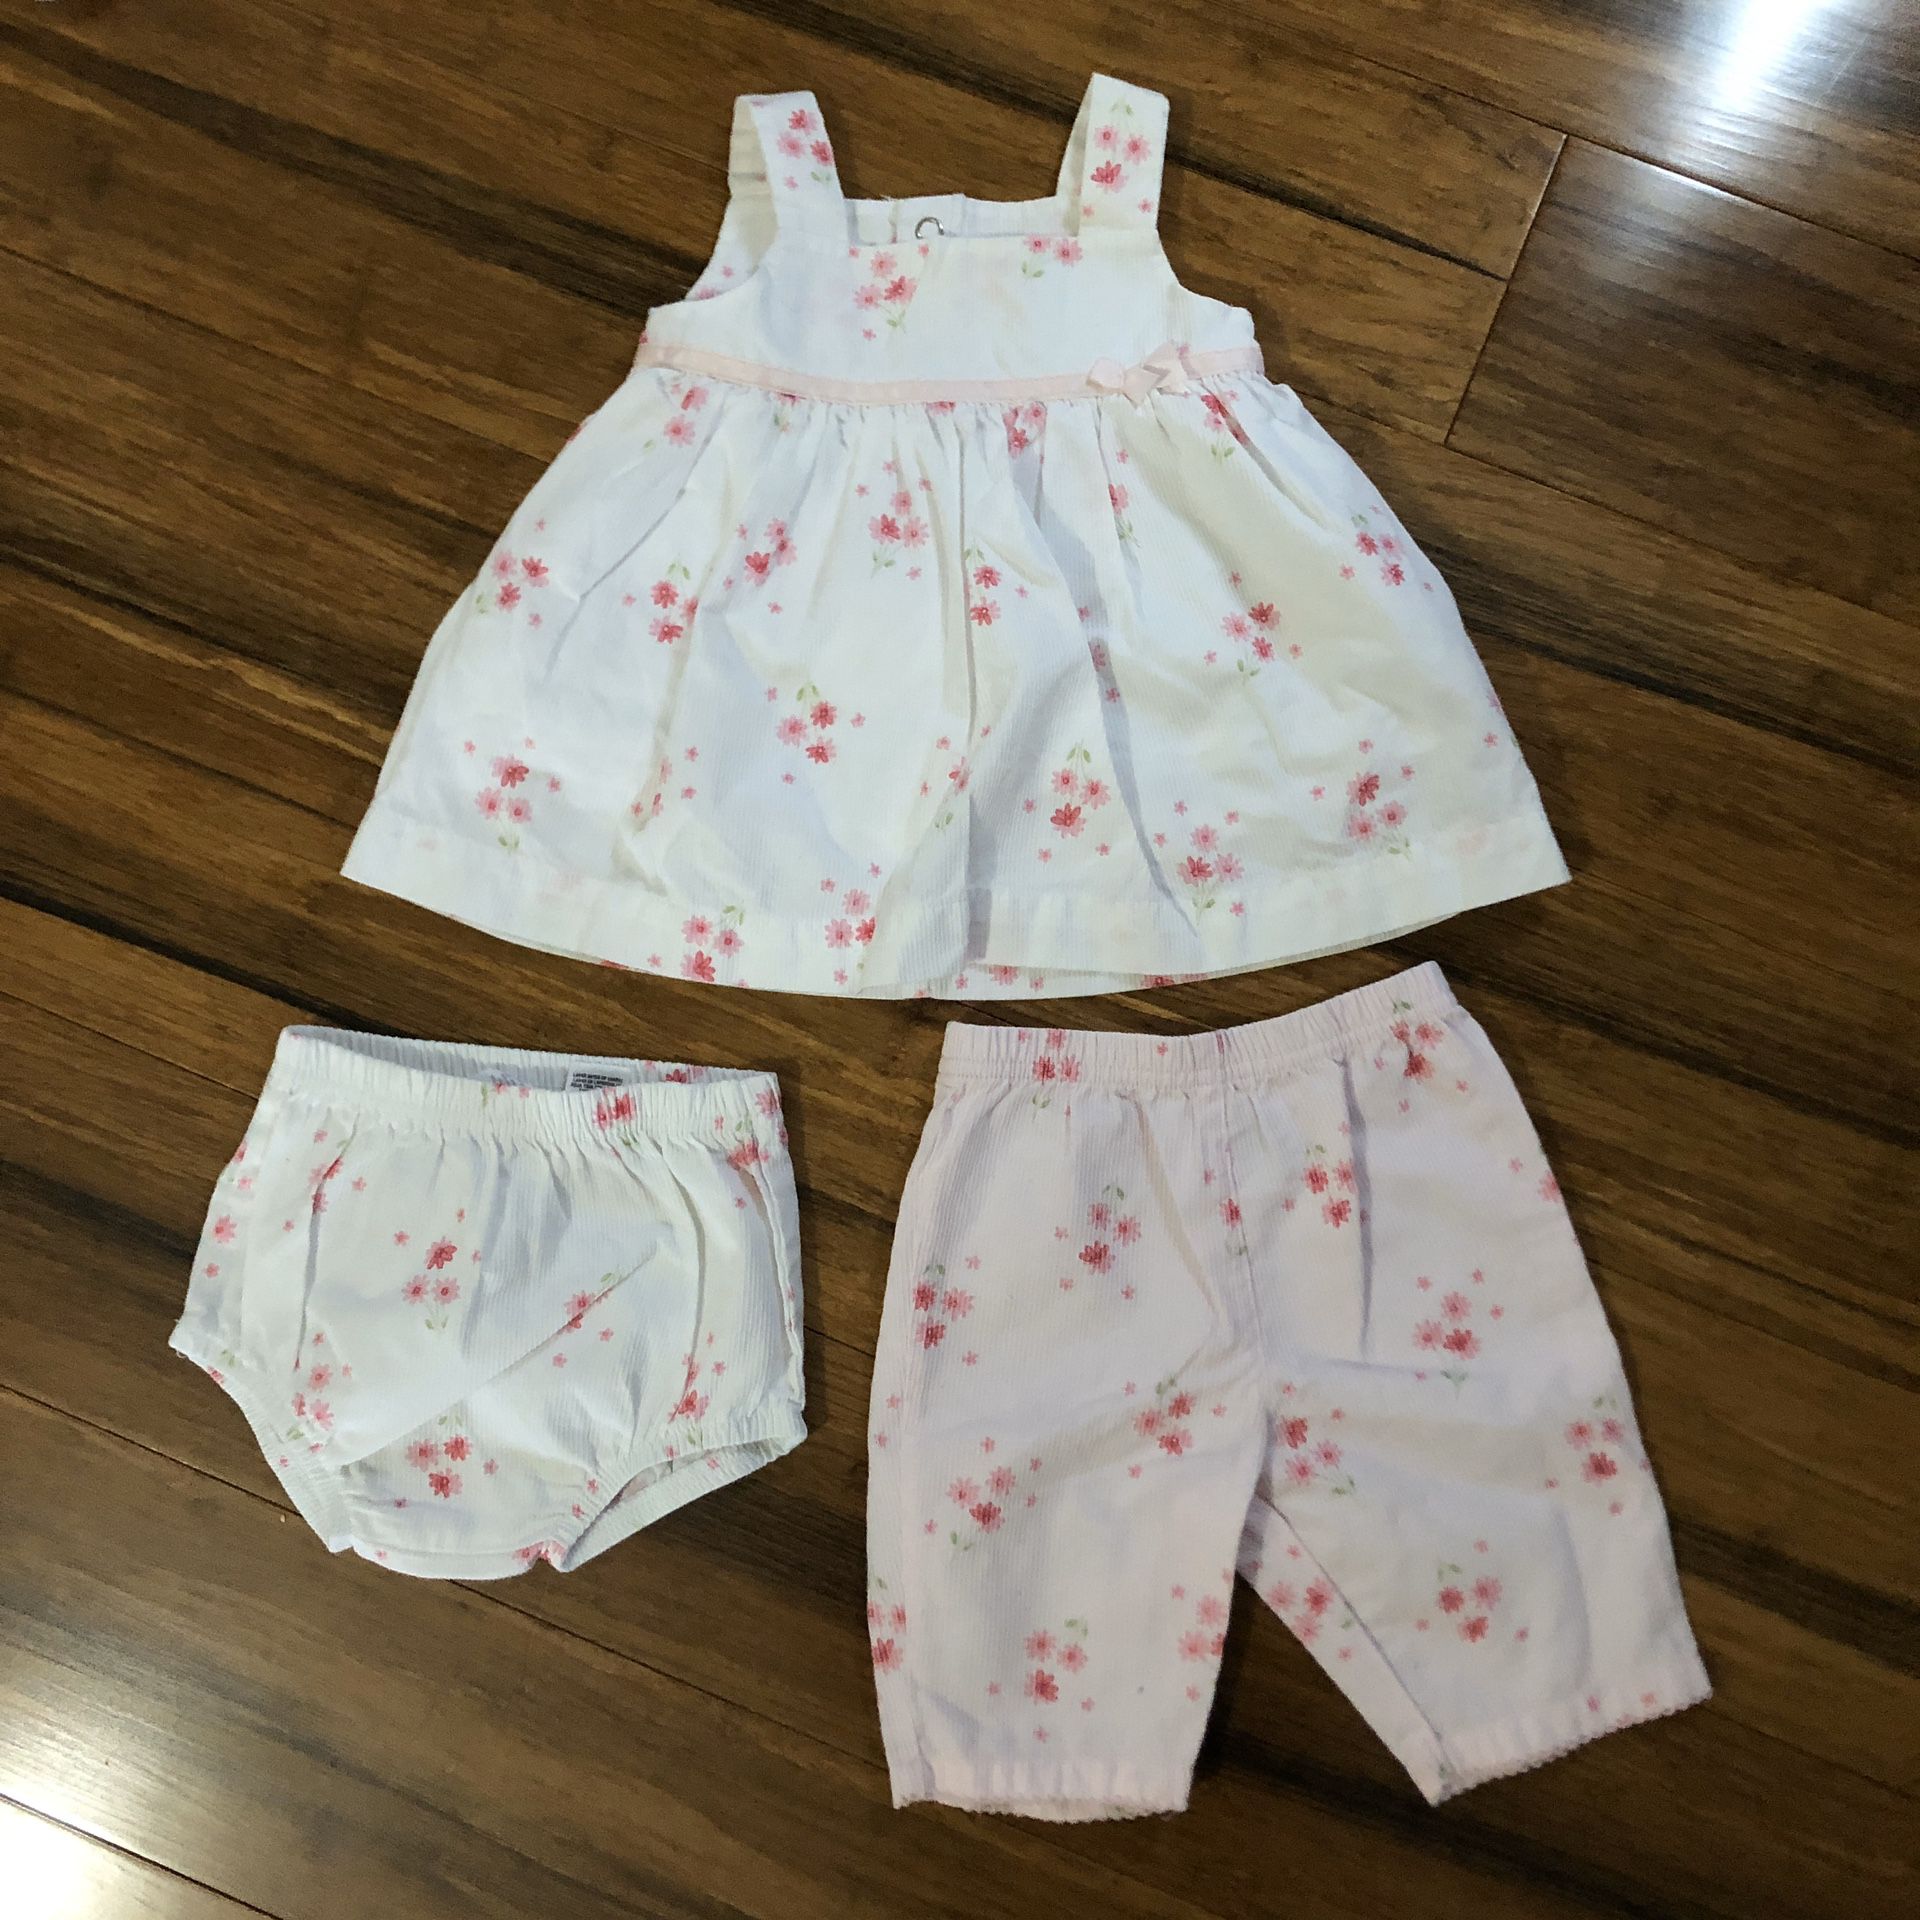 Newborn girl dress/outfit